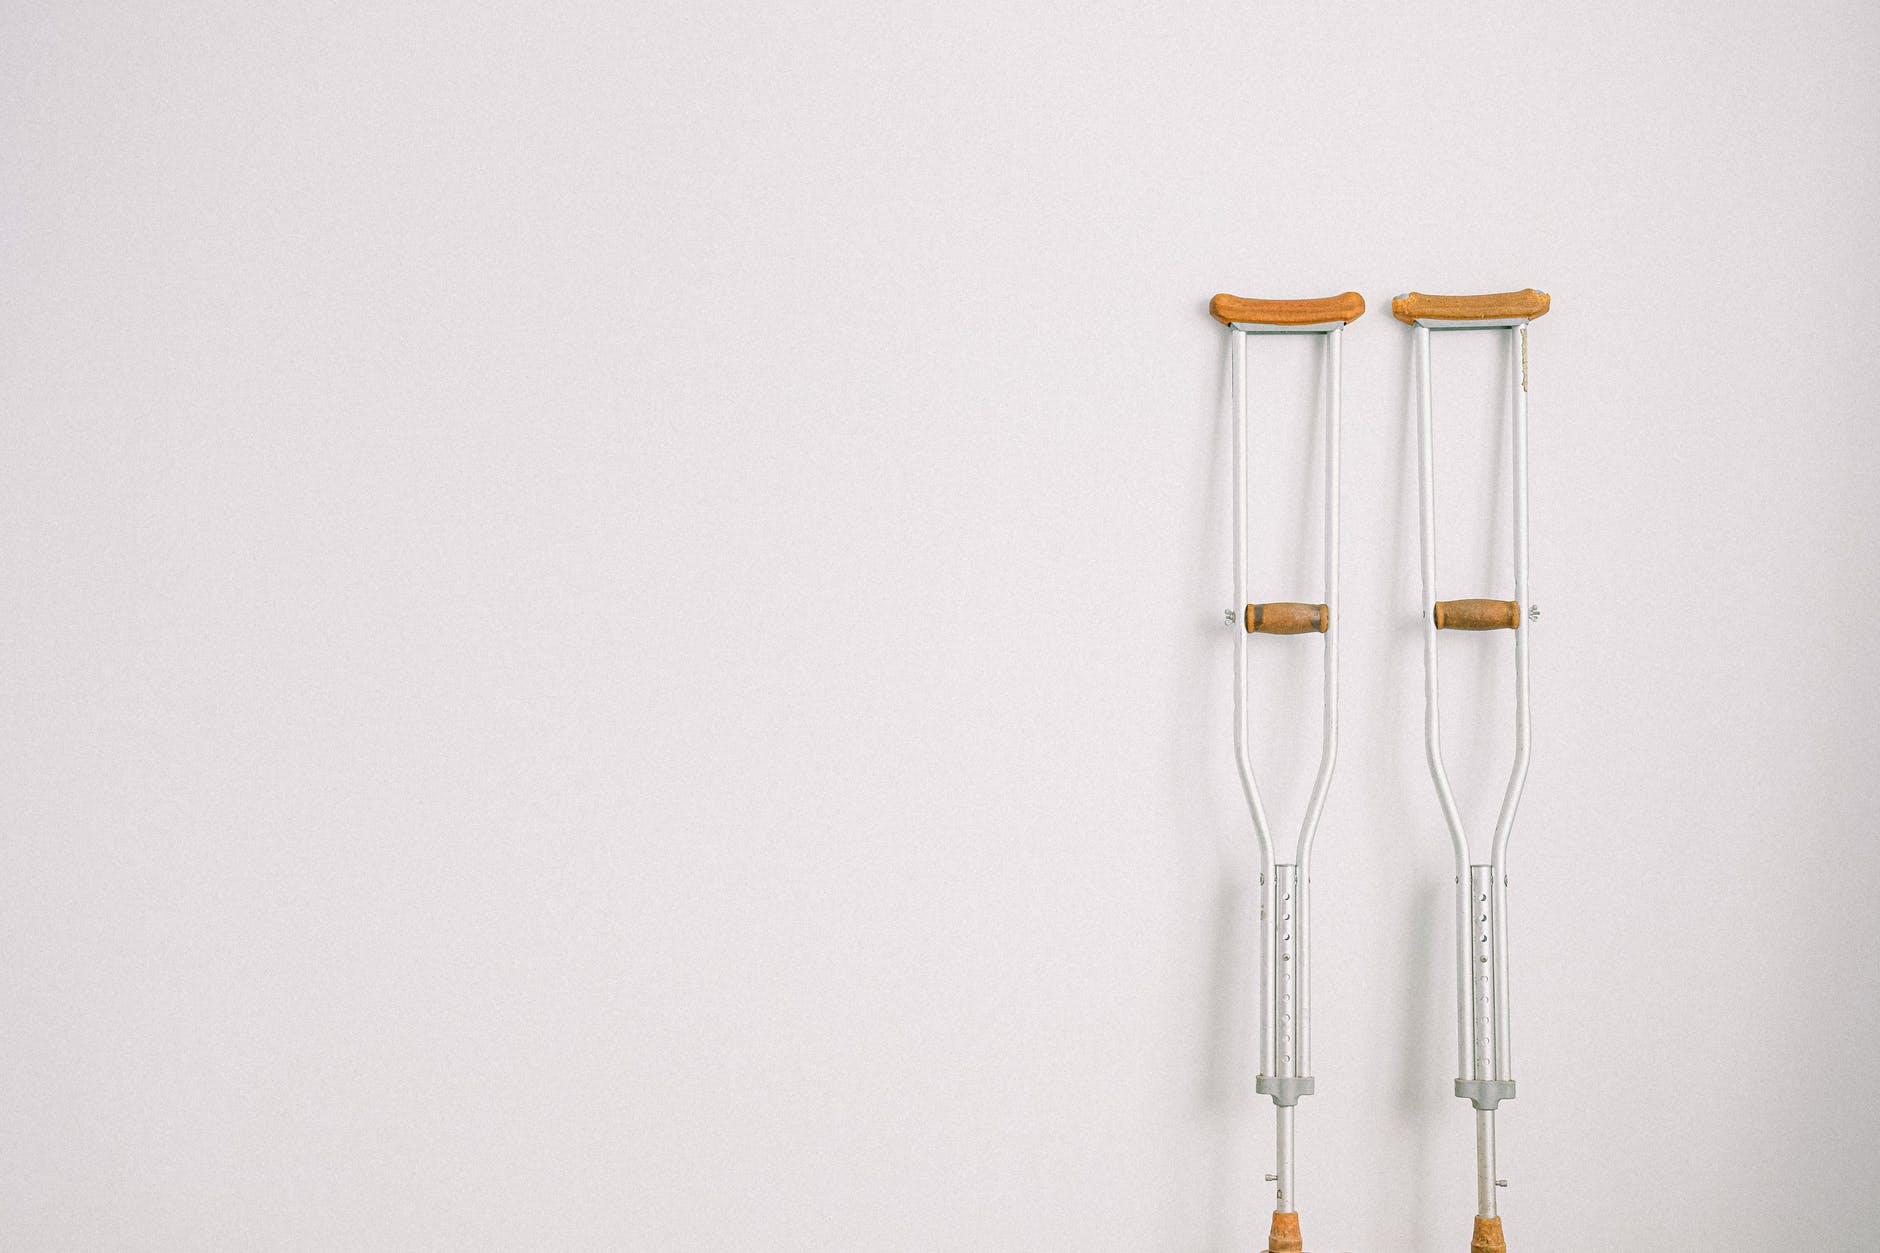 walking crutches